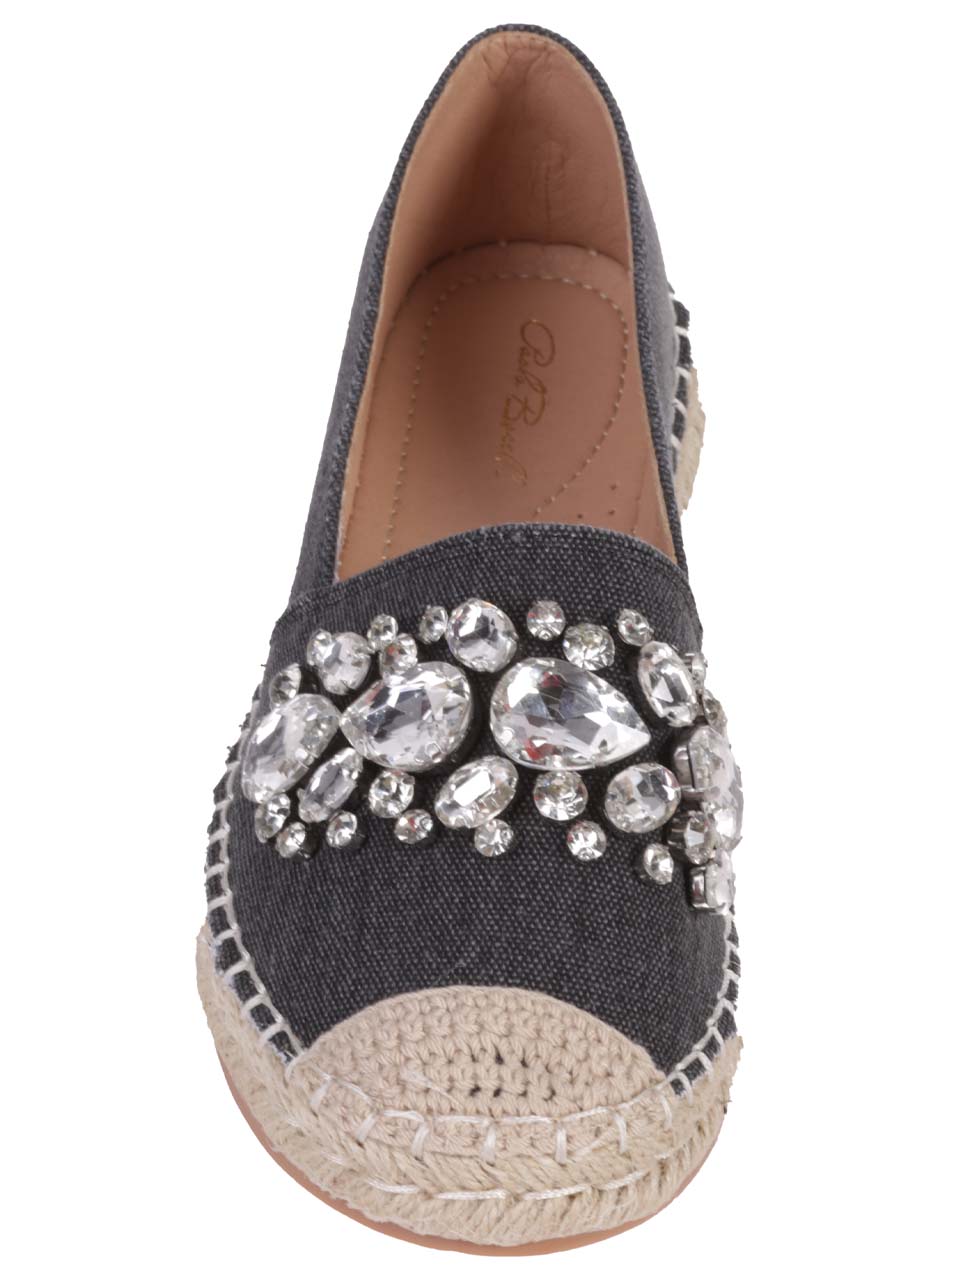 Ежедневни дамски обувки с декоративни камъни в черно 3H-24181 black